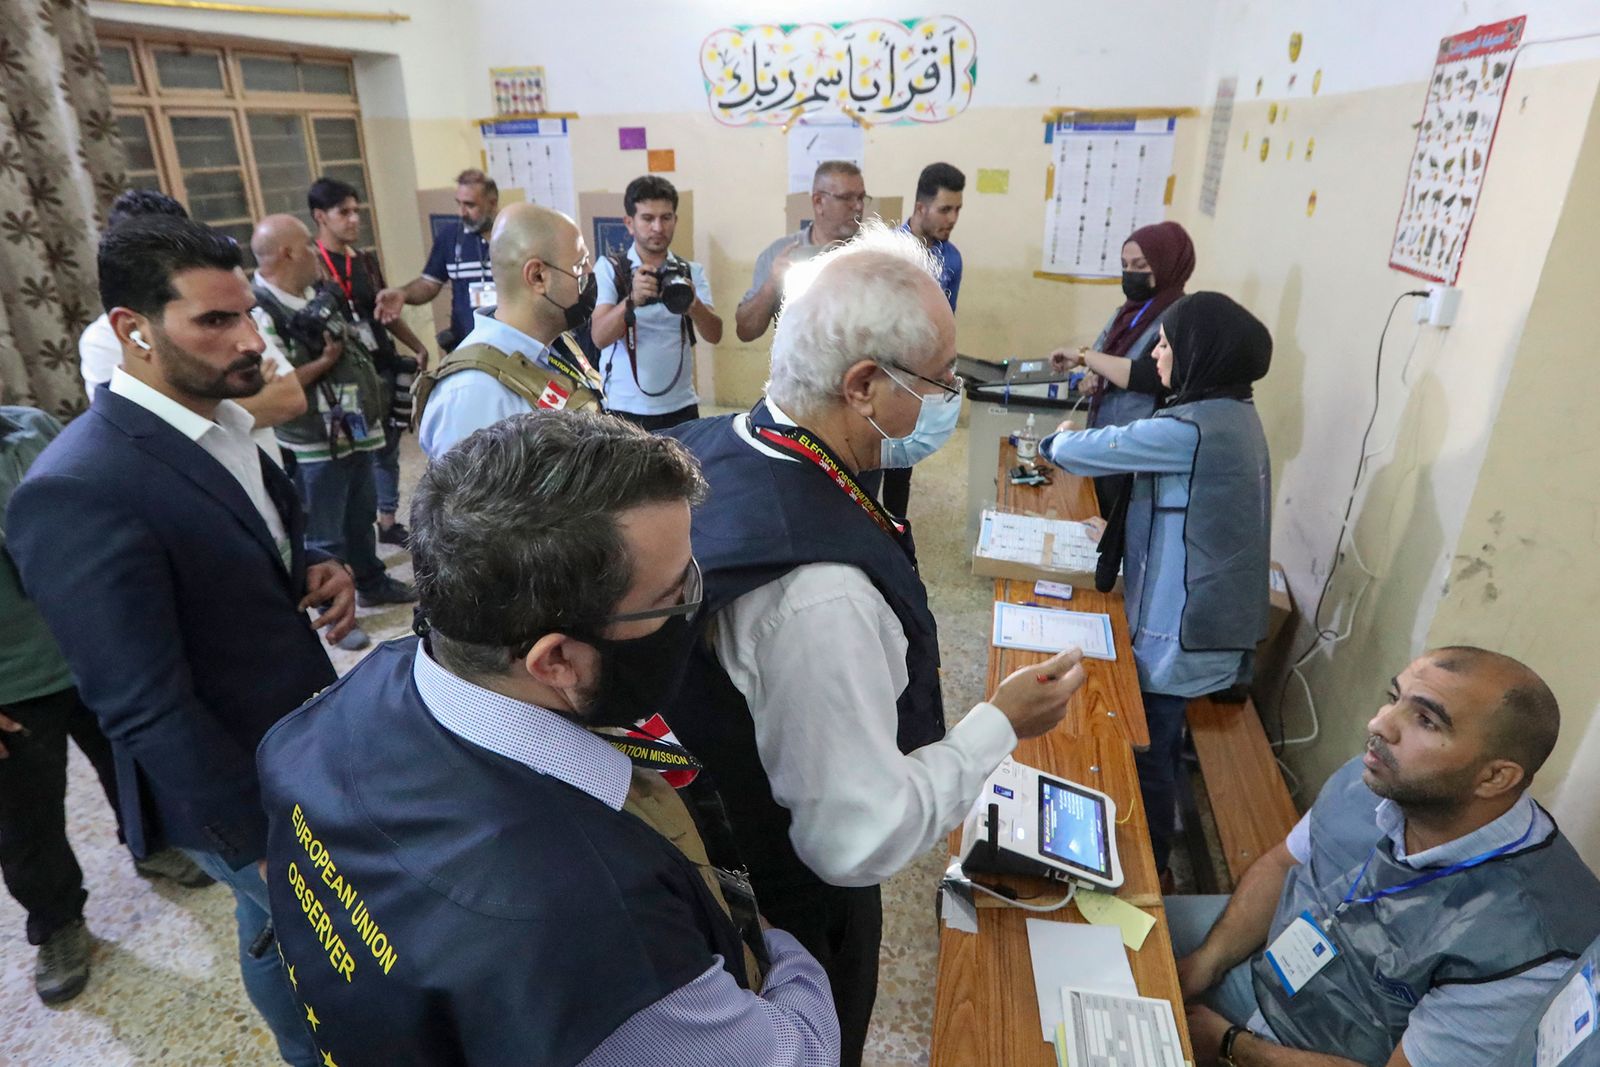 مراقبو الاتحاد الأوروبي يتحدثون مع مسؤولي الانتخابات العراقيين أثناء فرز إلكتروني للأصوات في مركز اقتراع بالعاصمة بغداد – وكالة الأنباء الفرنسية. - AFP